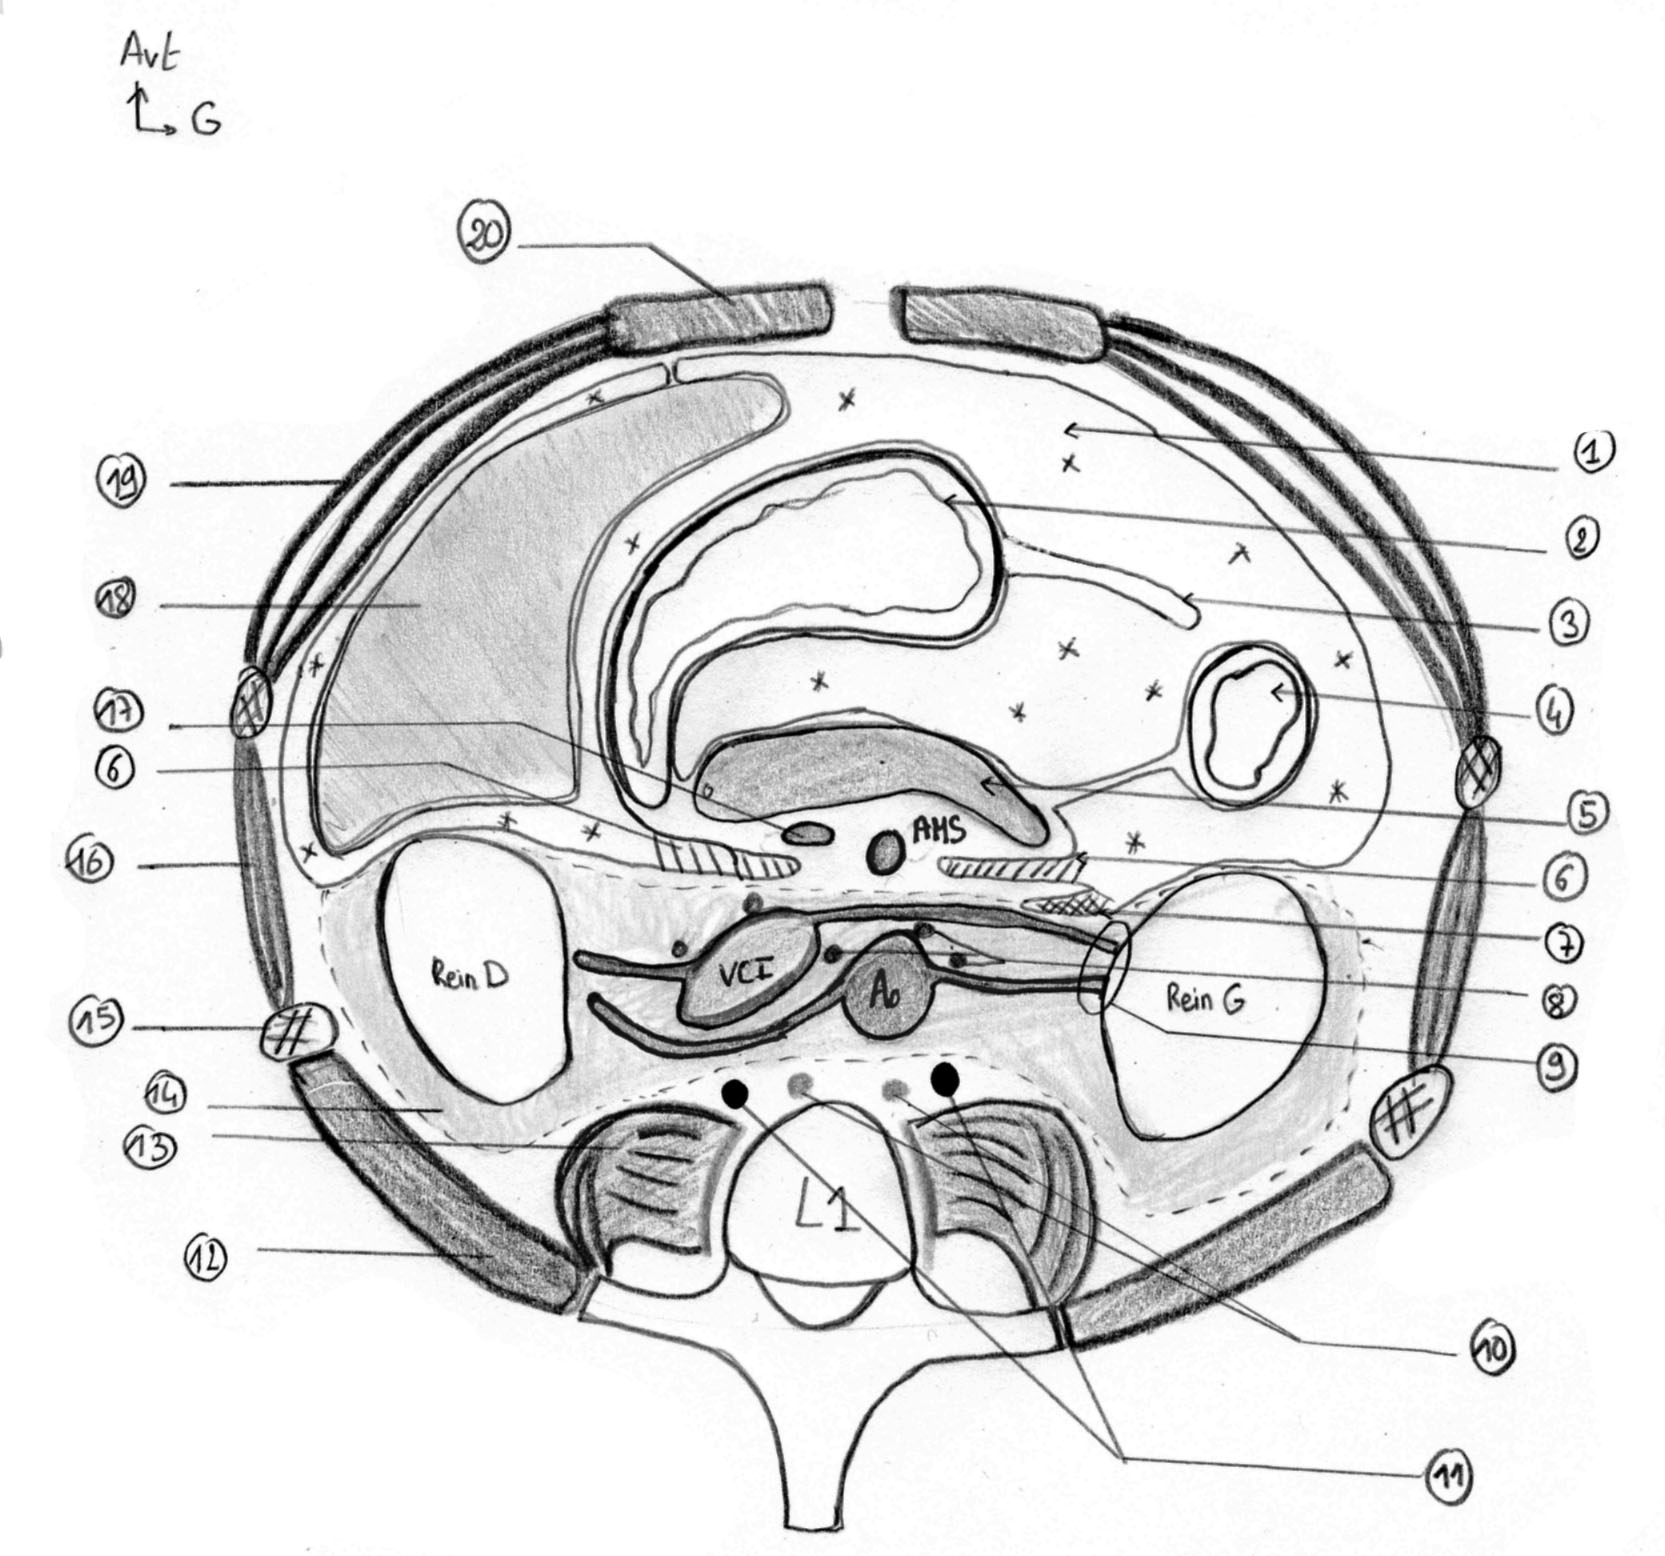 RVU Bases anatomiques des masses rétropéritonéales Coupe de l abdomen en L1 1 :Cavité péritonéale 2 : Estomac 3 : Grand omentum 4 : Angle colique gauche 5 : Pancréas 6 : Fascias de Treitz 7 : Fascias